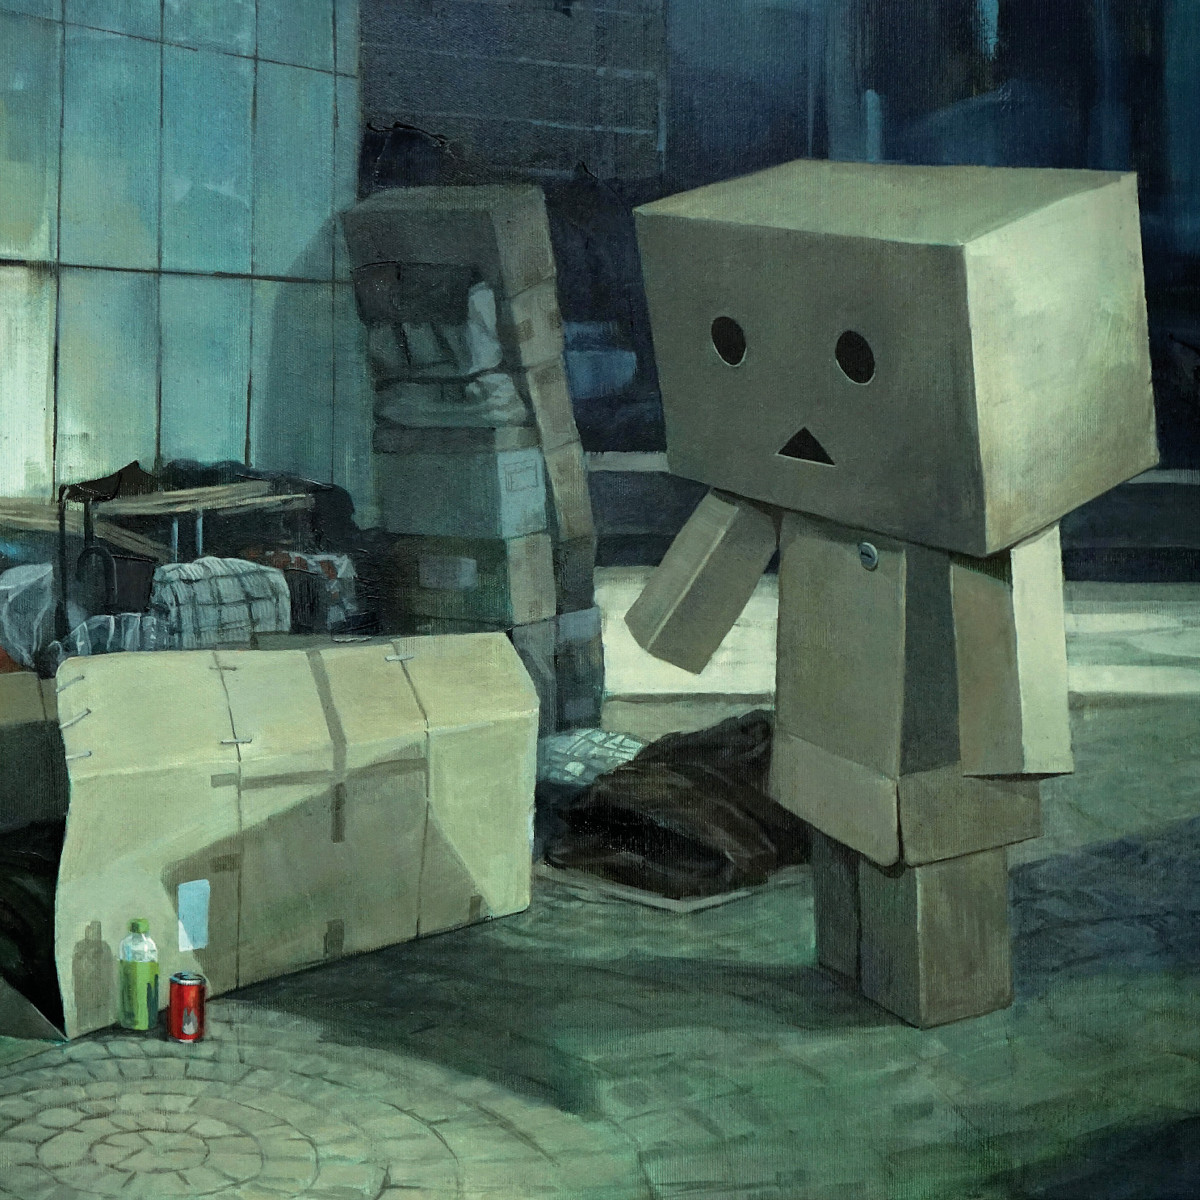 ARTMUC re:start - eine Sonderausstellung. Das Gemälde von Tobias Frank zeigt einen traurigen Karton in Menschengestallt in einem grauen Hinterhof. Die einzigen kräftigen Farben sind eine grüne Flasche und eine rote Coladose vor dem traurigen Karton